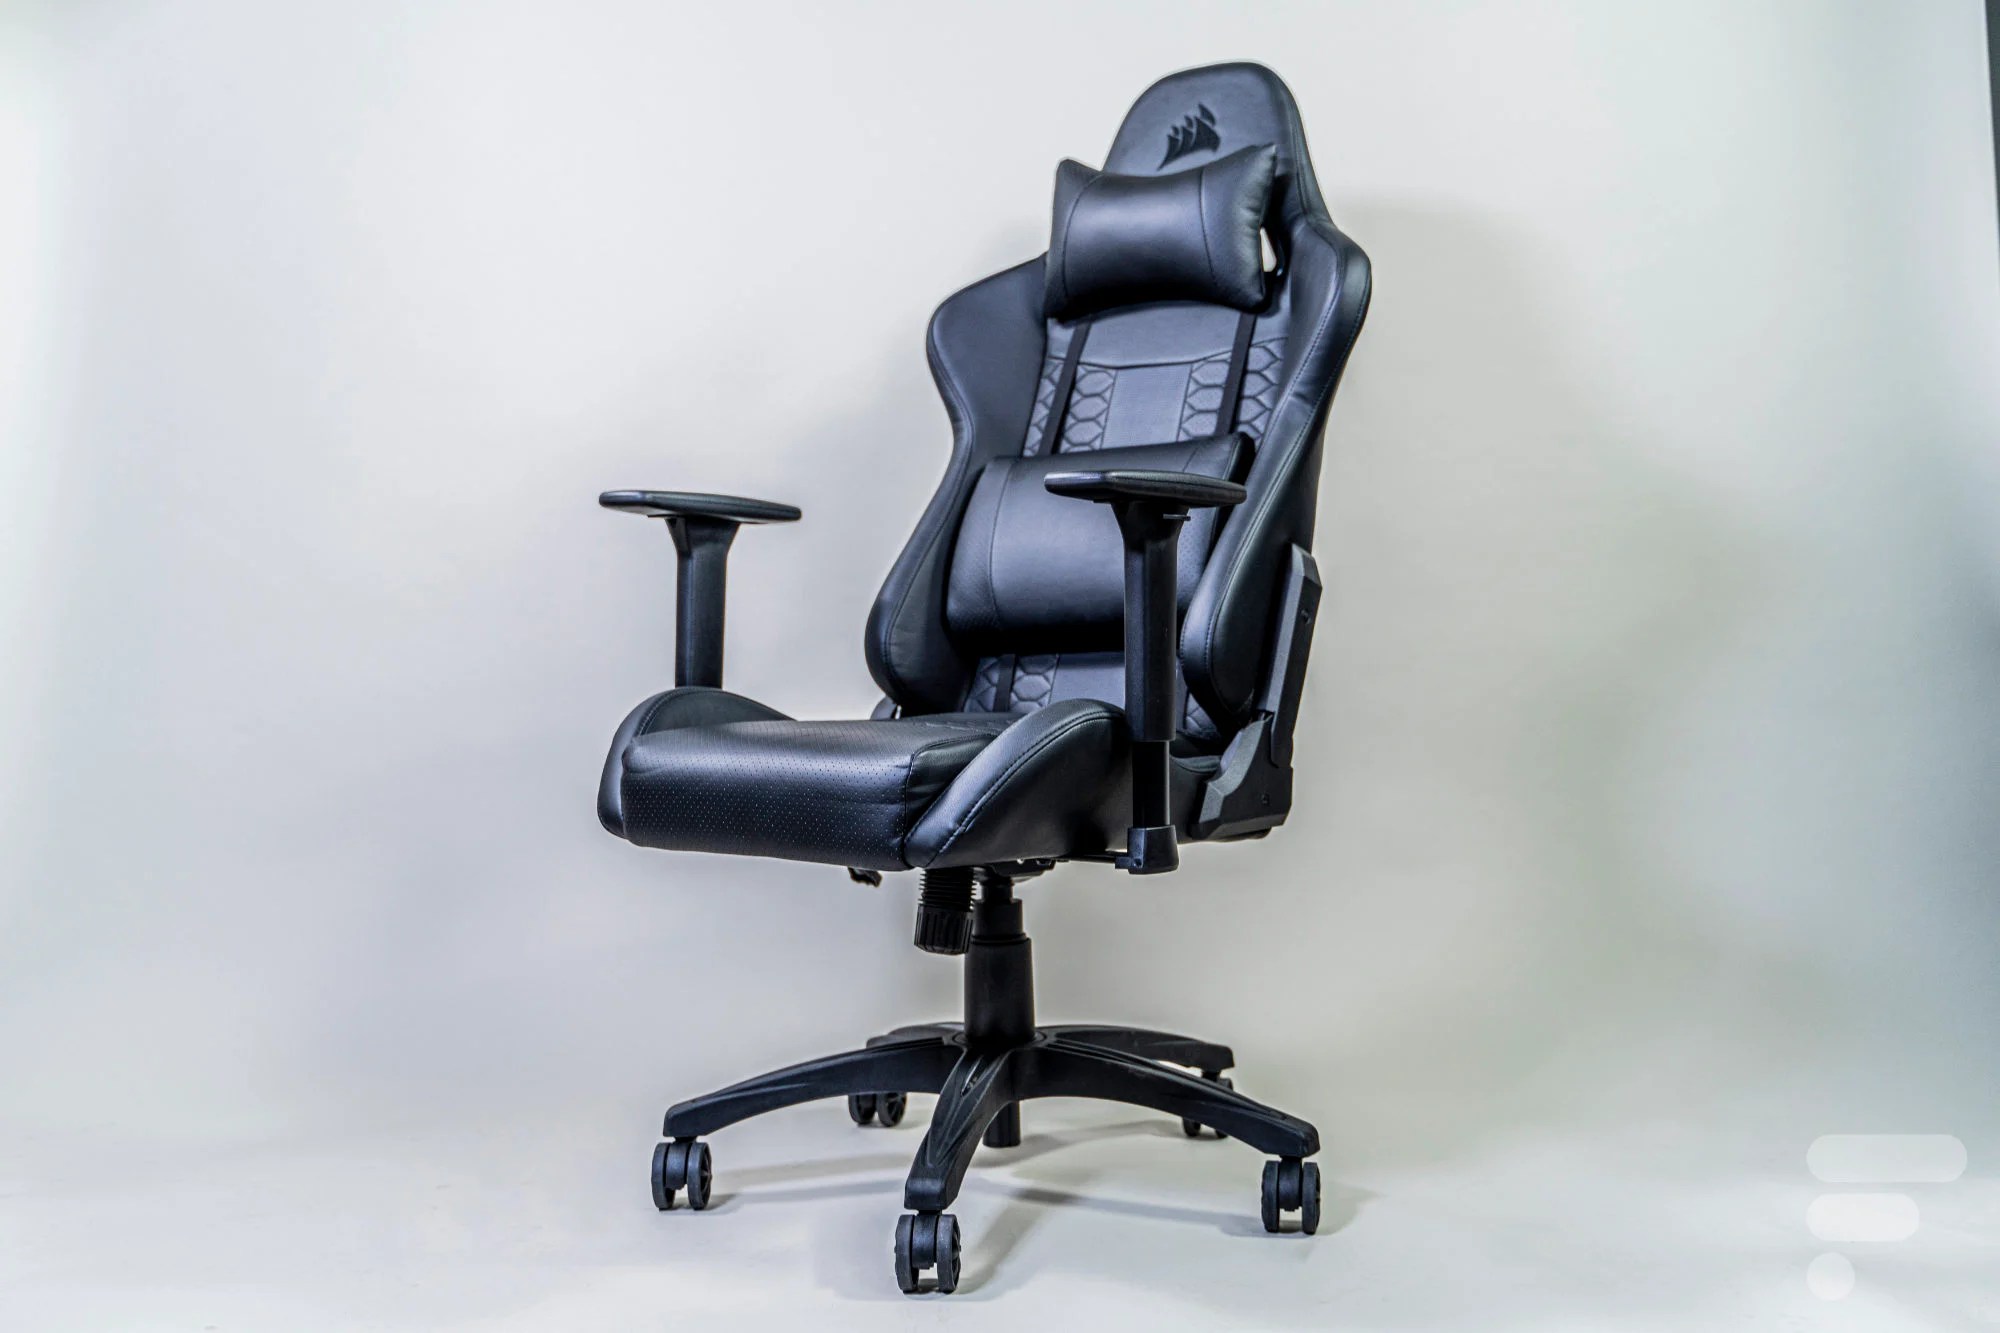 Test du fauteuil Corsair TC100 Relaxed : pas besoin de débourser des milliers d’euros pour une chaise gaming